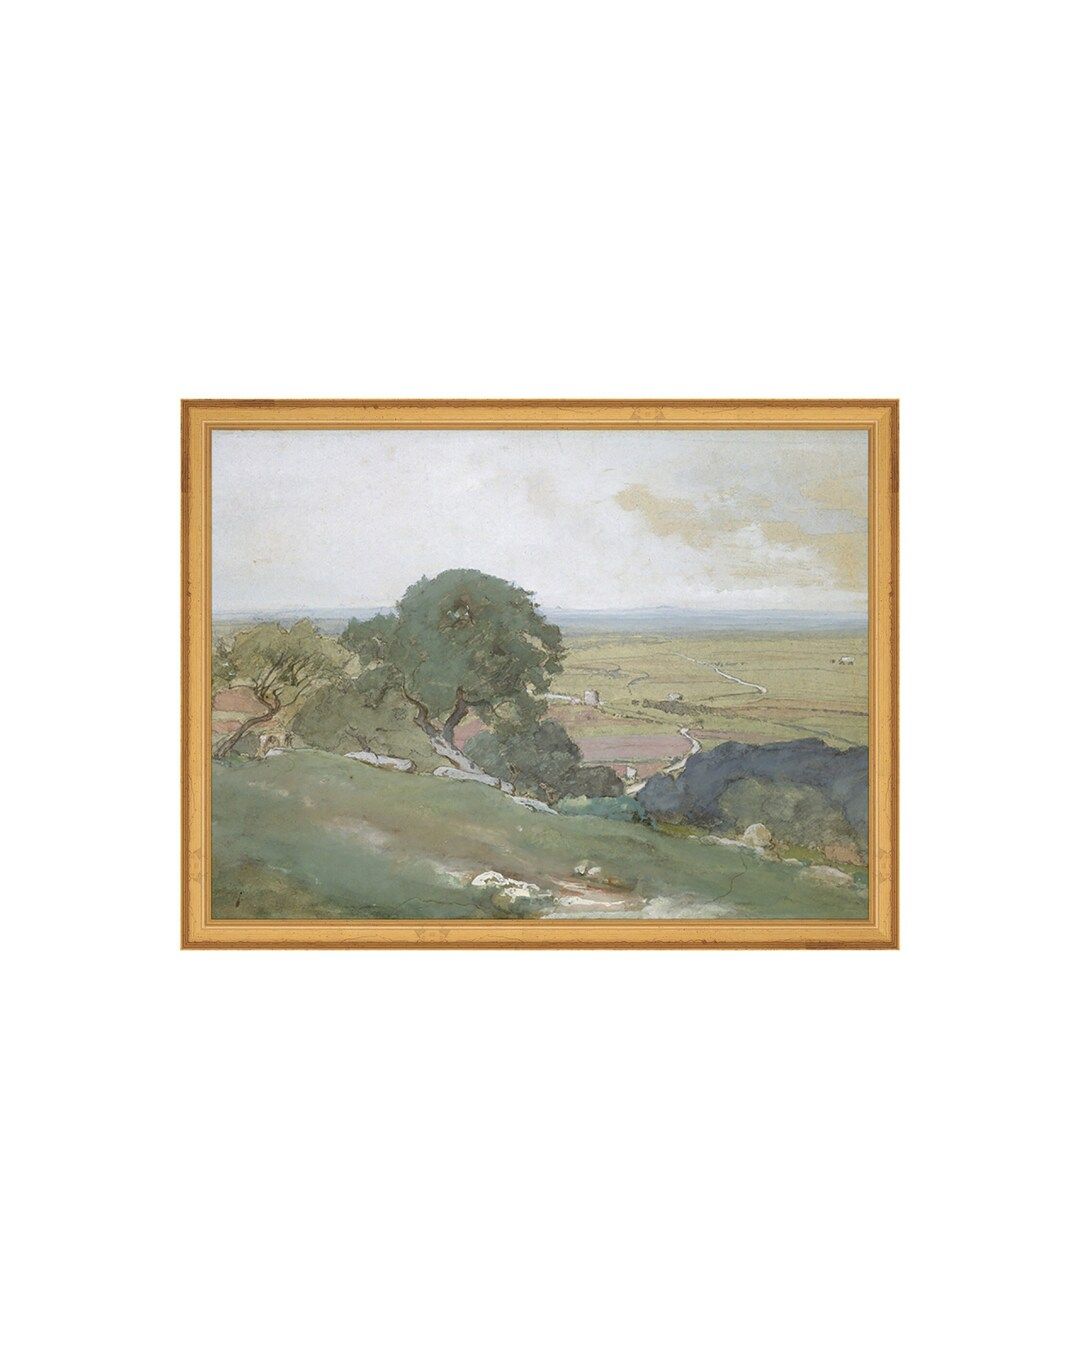 FRAMED. OLIVES. Olive Green Painting. Framed Vintage Landscape. Antique Landscape Artwork. Countr... | Etsy (CAD)